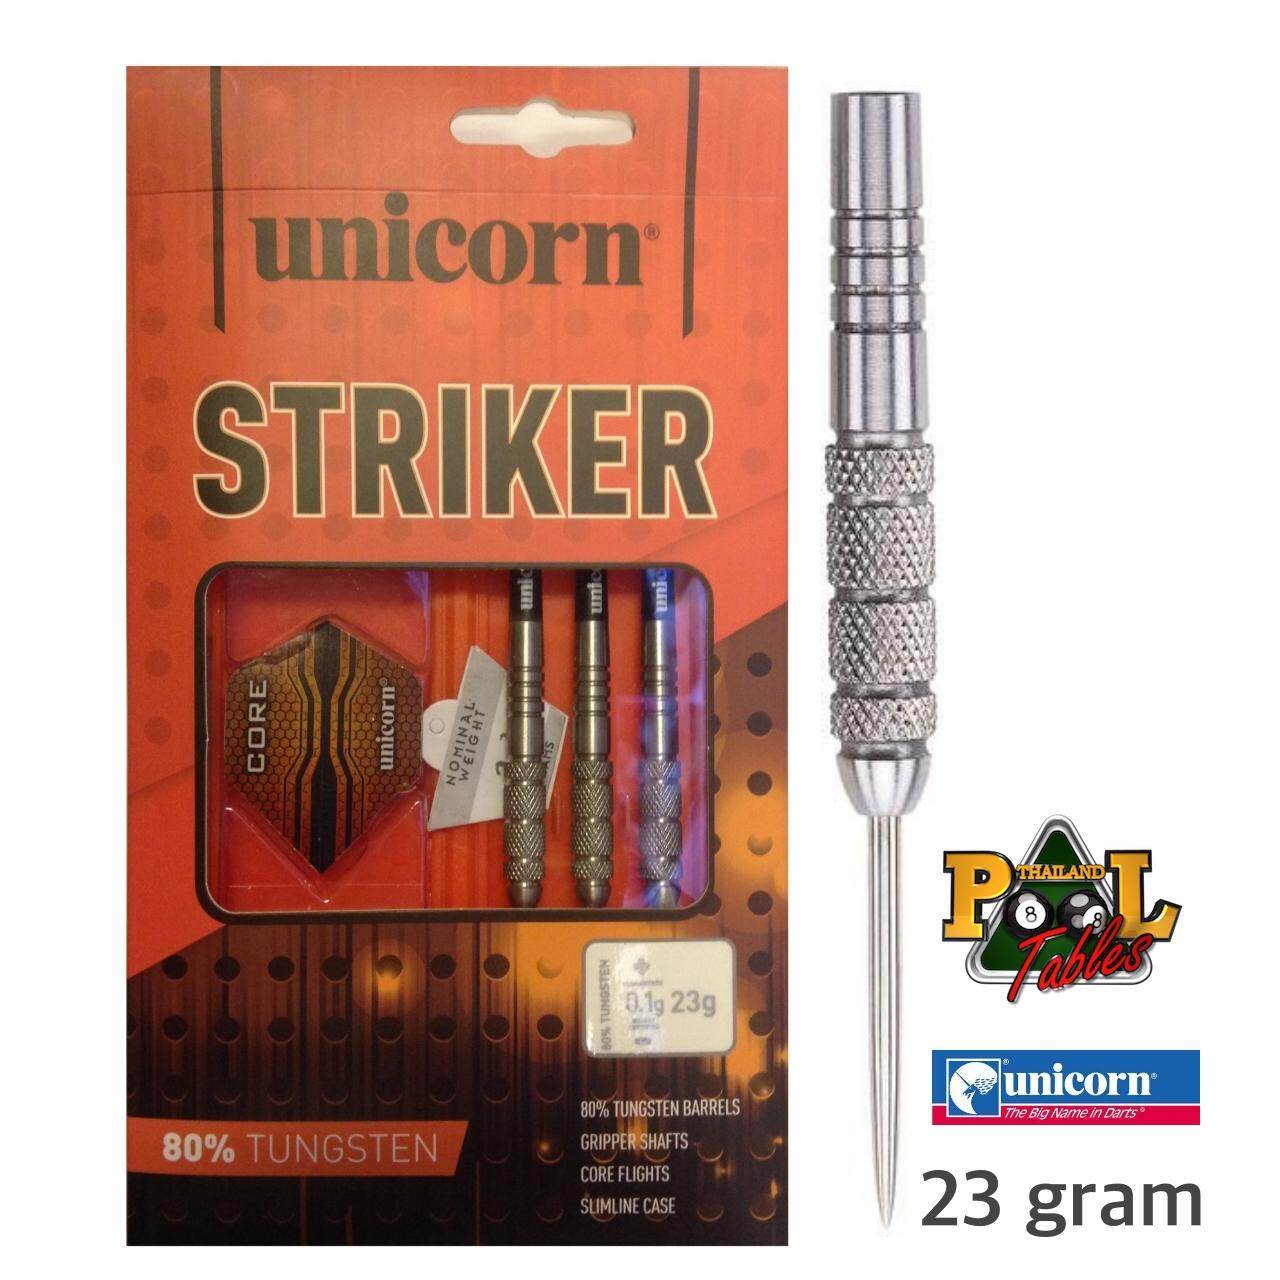 ลูกดอกปาเป้า Unicorn XL Striker 80% Tungsten Darts น้ำหนัก 23g